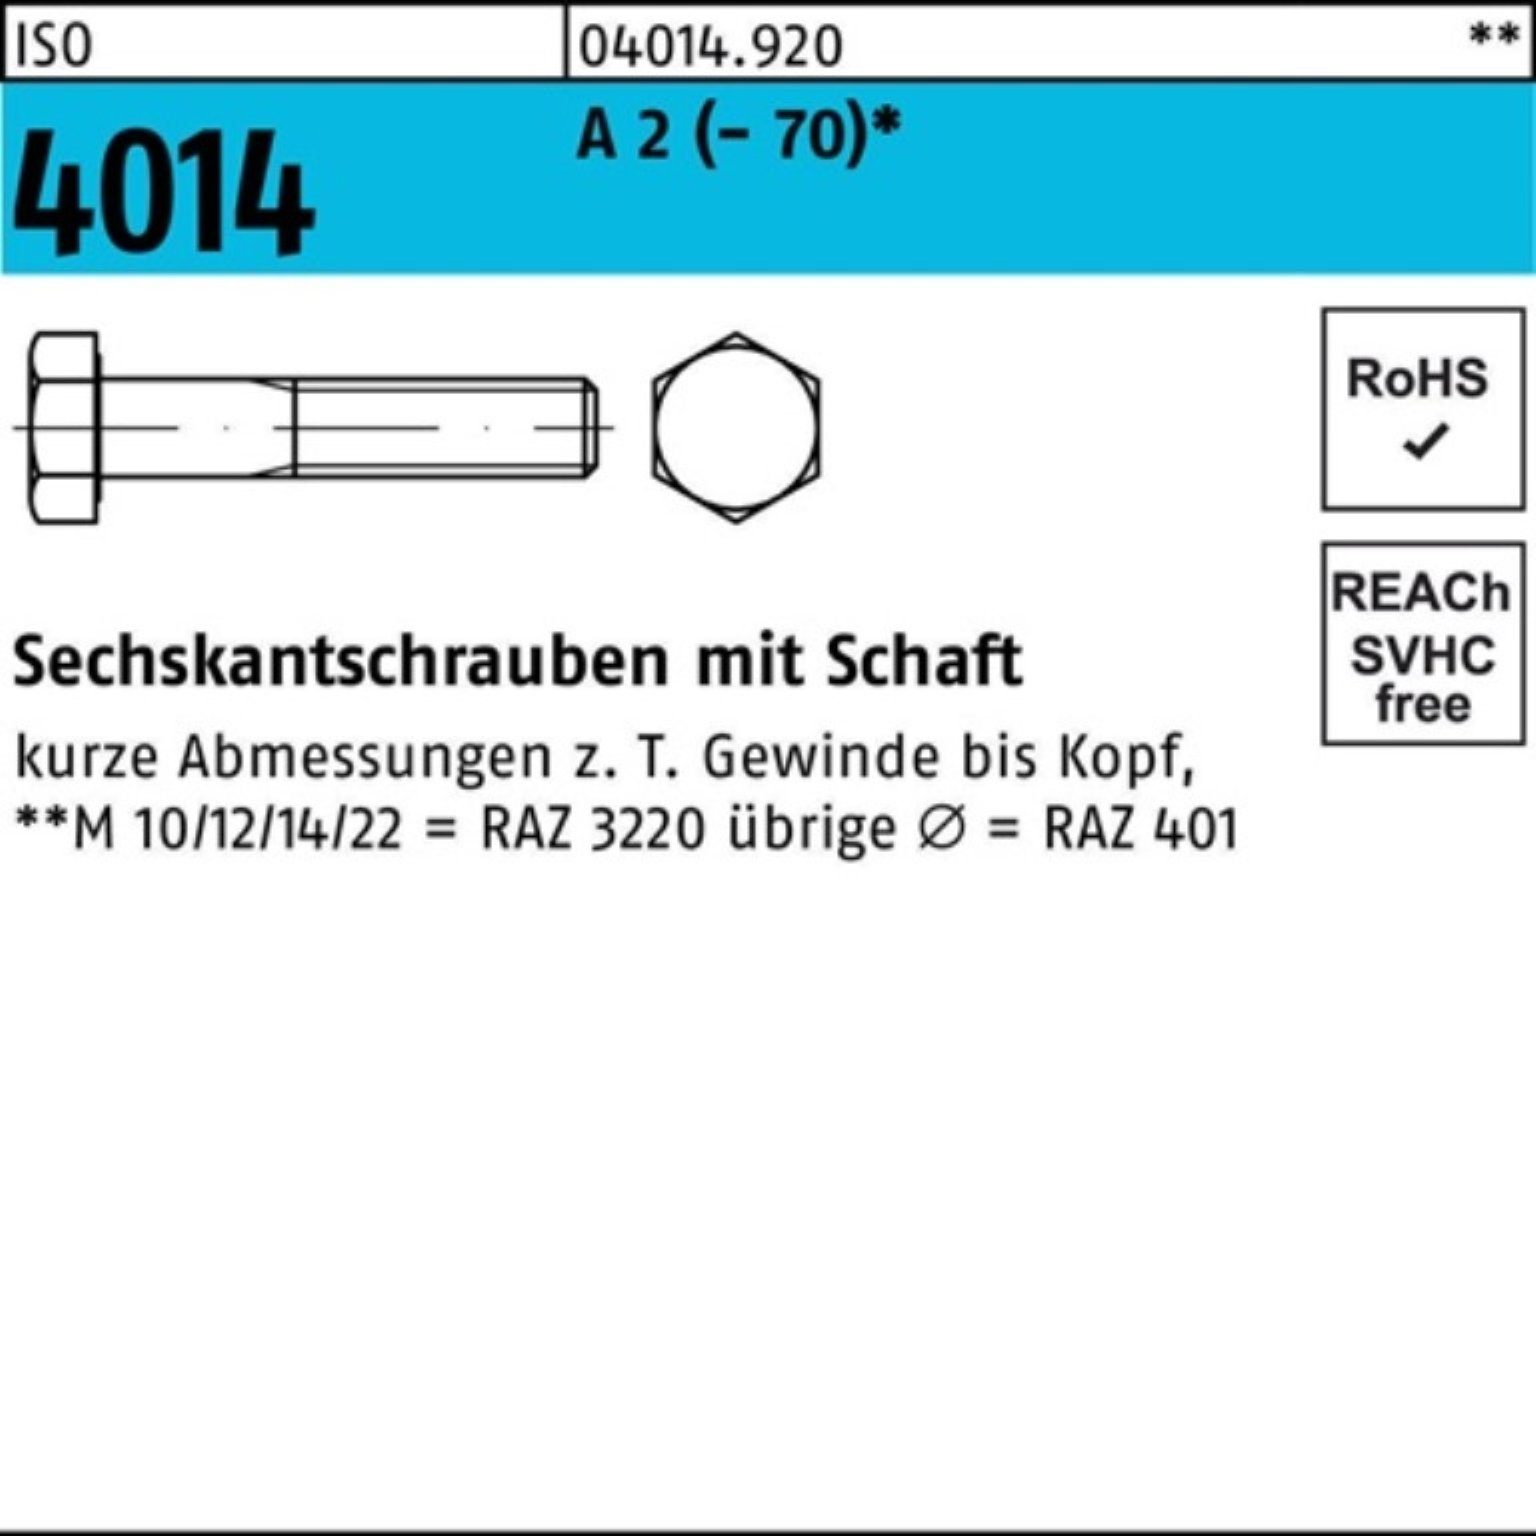 190 Pack Sechskantschraube 25 A 100er St Sechskantschraube Schaft M8x 4014 2 (70) ISO Bufab